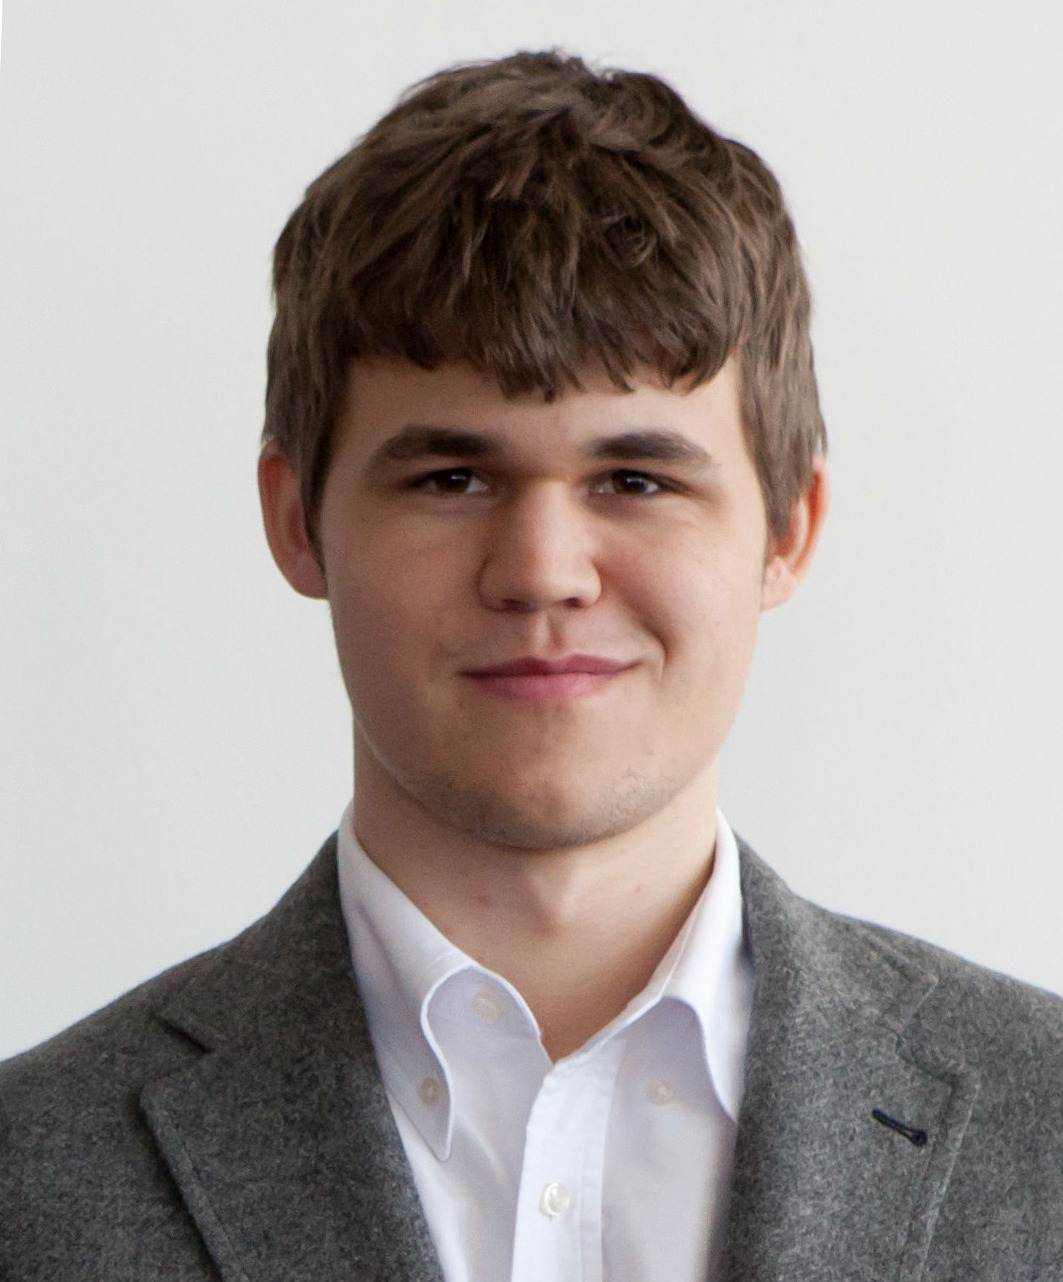 Magnus Carlsen, Wikitubia